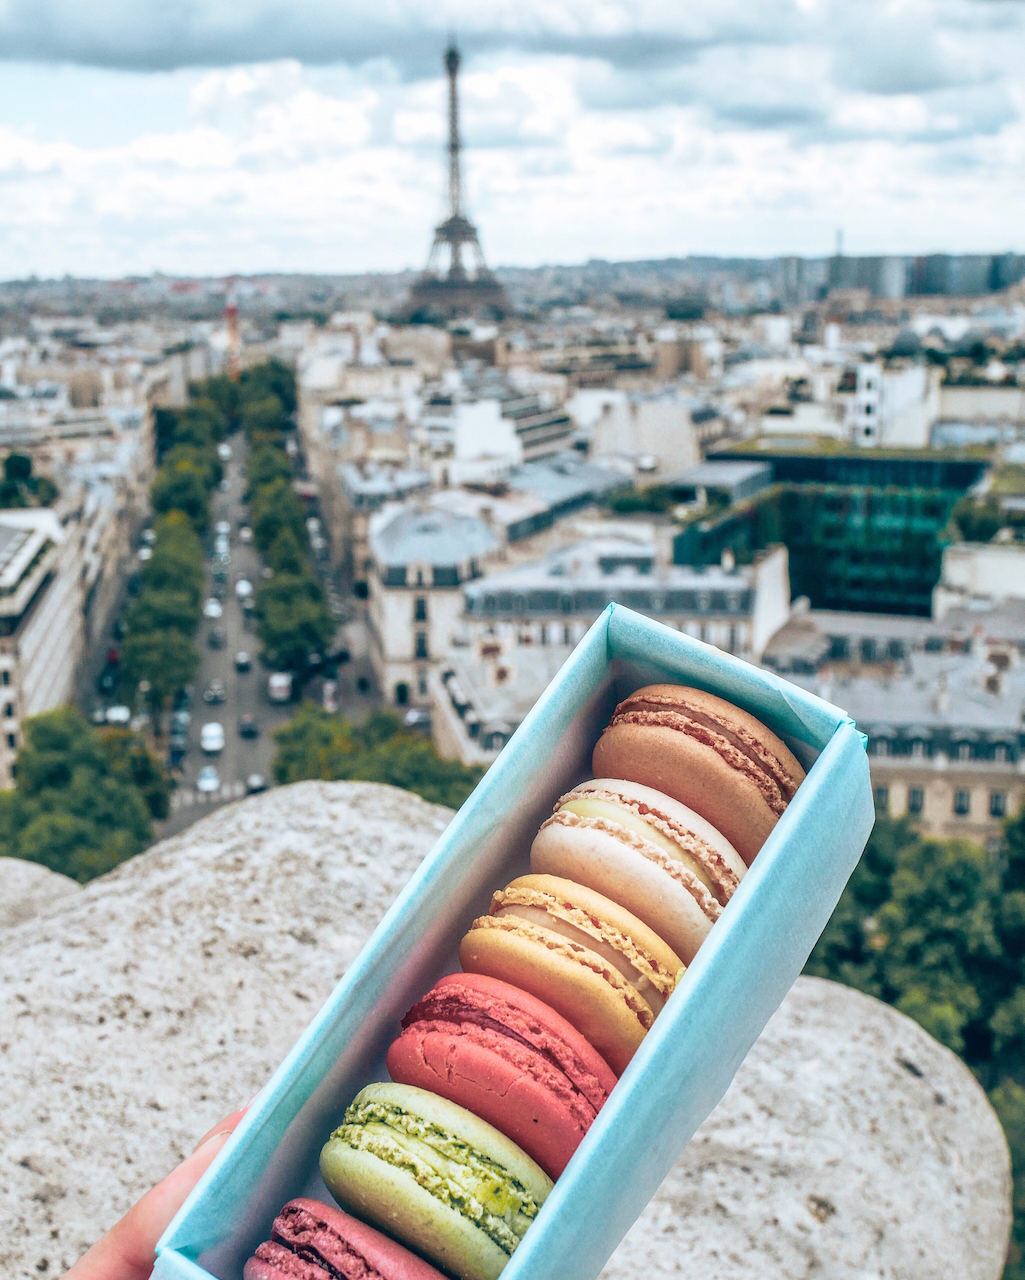 Boîte de macarons Ladurée au sommet de l'arc-de-triomphe avec vue sur la Tour Eiffel - Paris - France